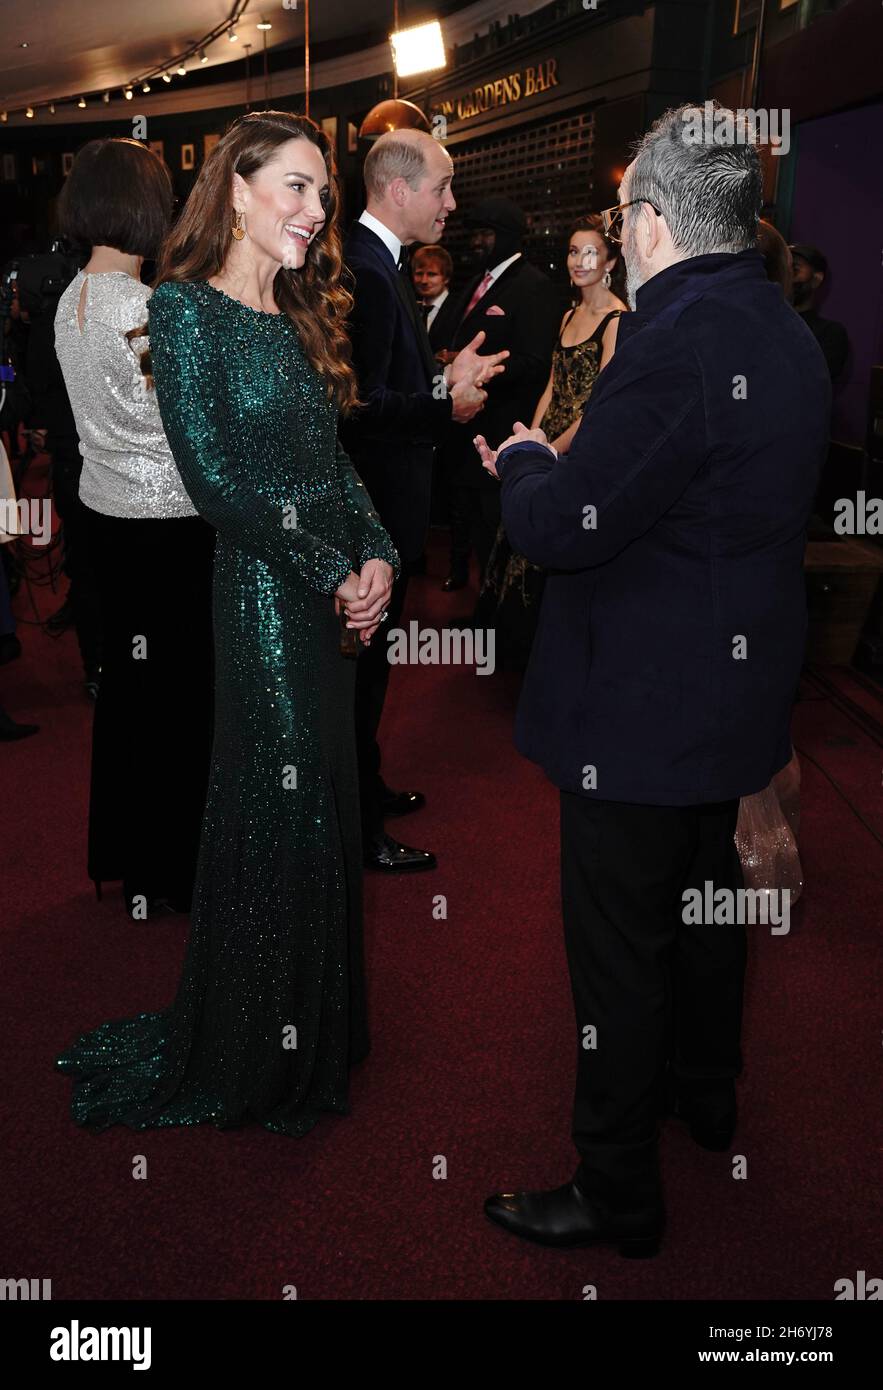 La duchesse de Cambridge parlant à Elvis Costello après la Royal Variety Performance au Royal Albert Hall, Londres.Date de la photo: Jeudi 18 novembre 2021. Banque D'Images